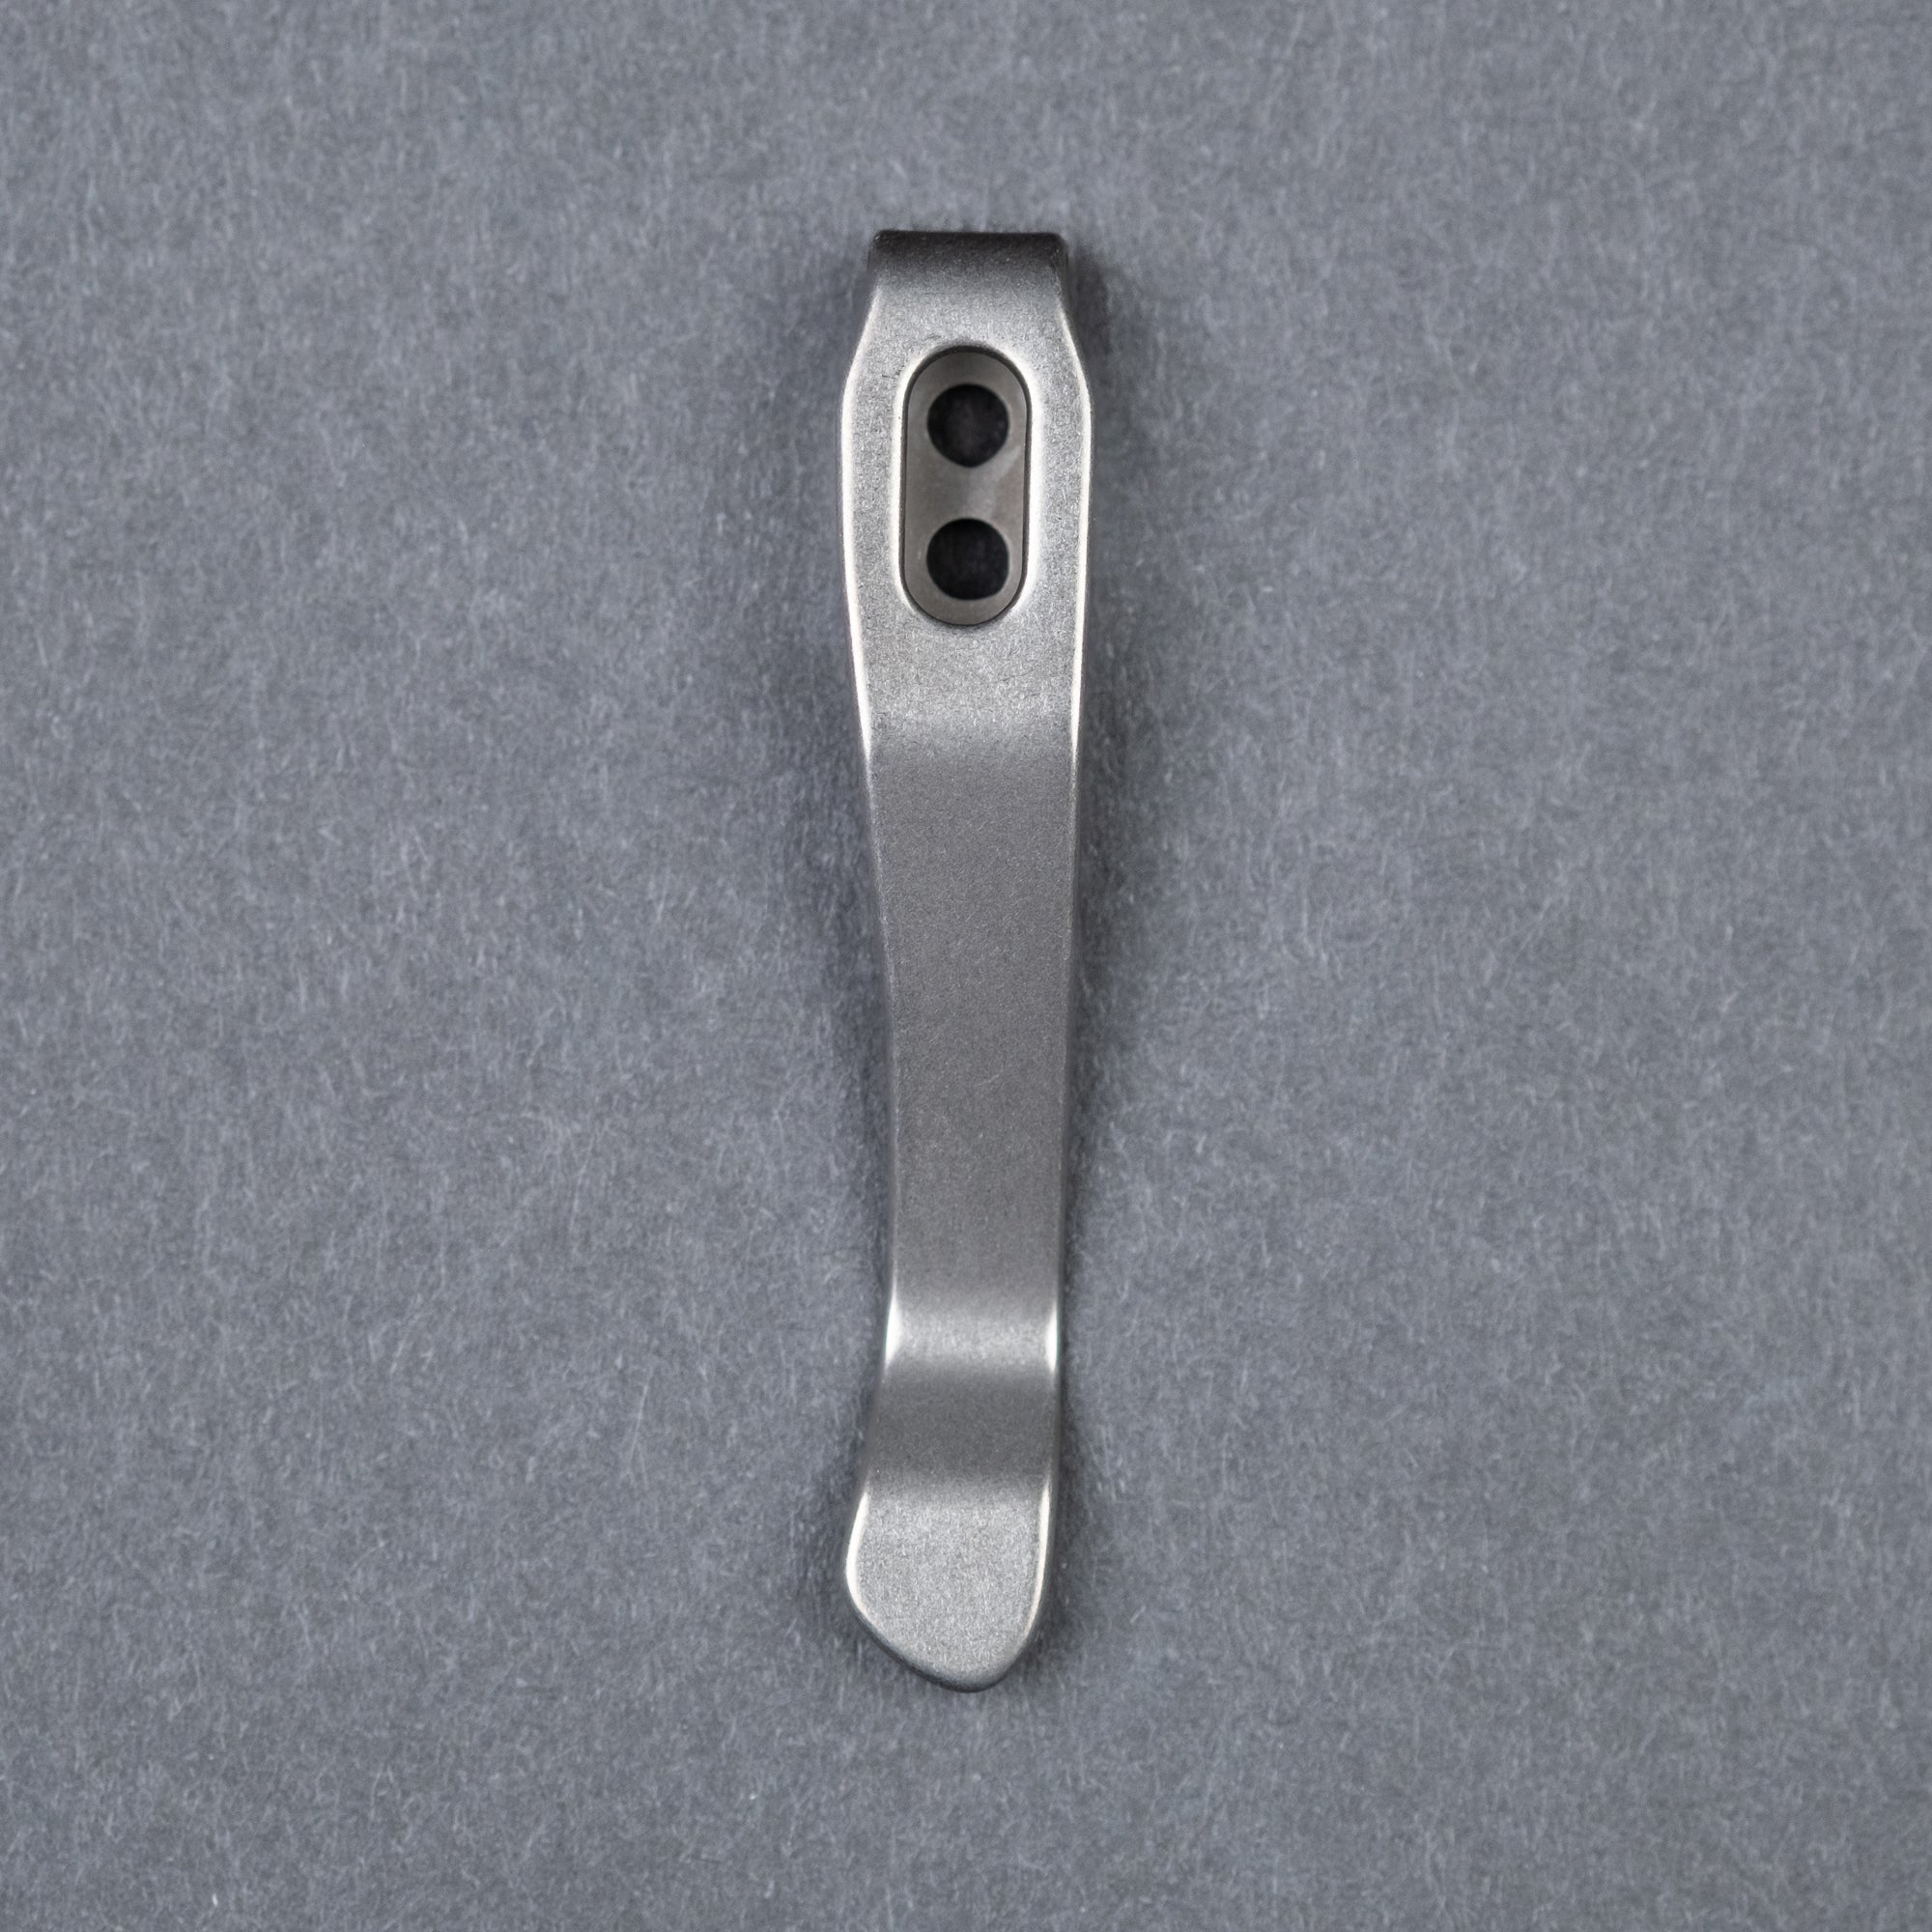 Permanent Markers W- Pocket Clip - Black Fine Tip (5/Pack)1-Pack - G8 Central